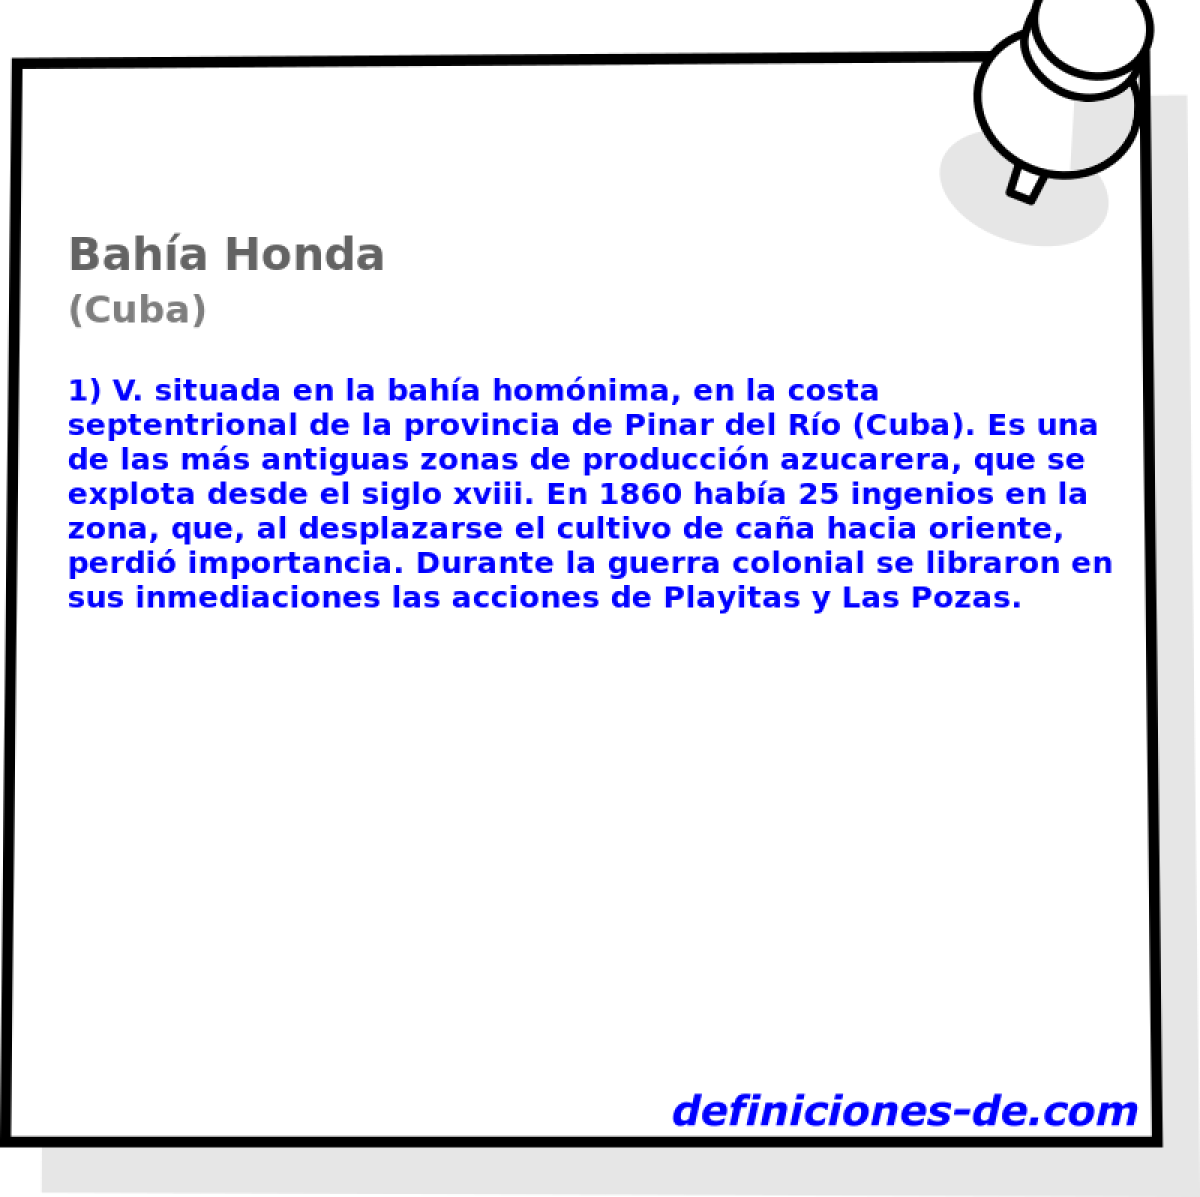 Baha Honda (Cuba)